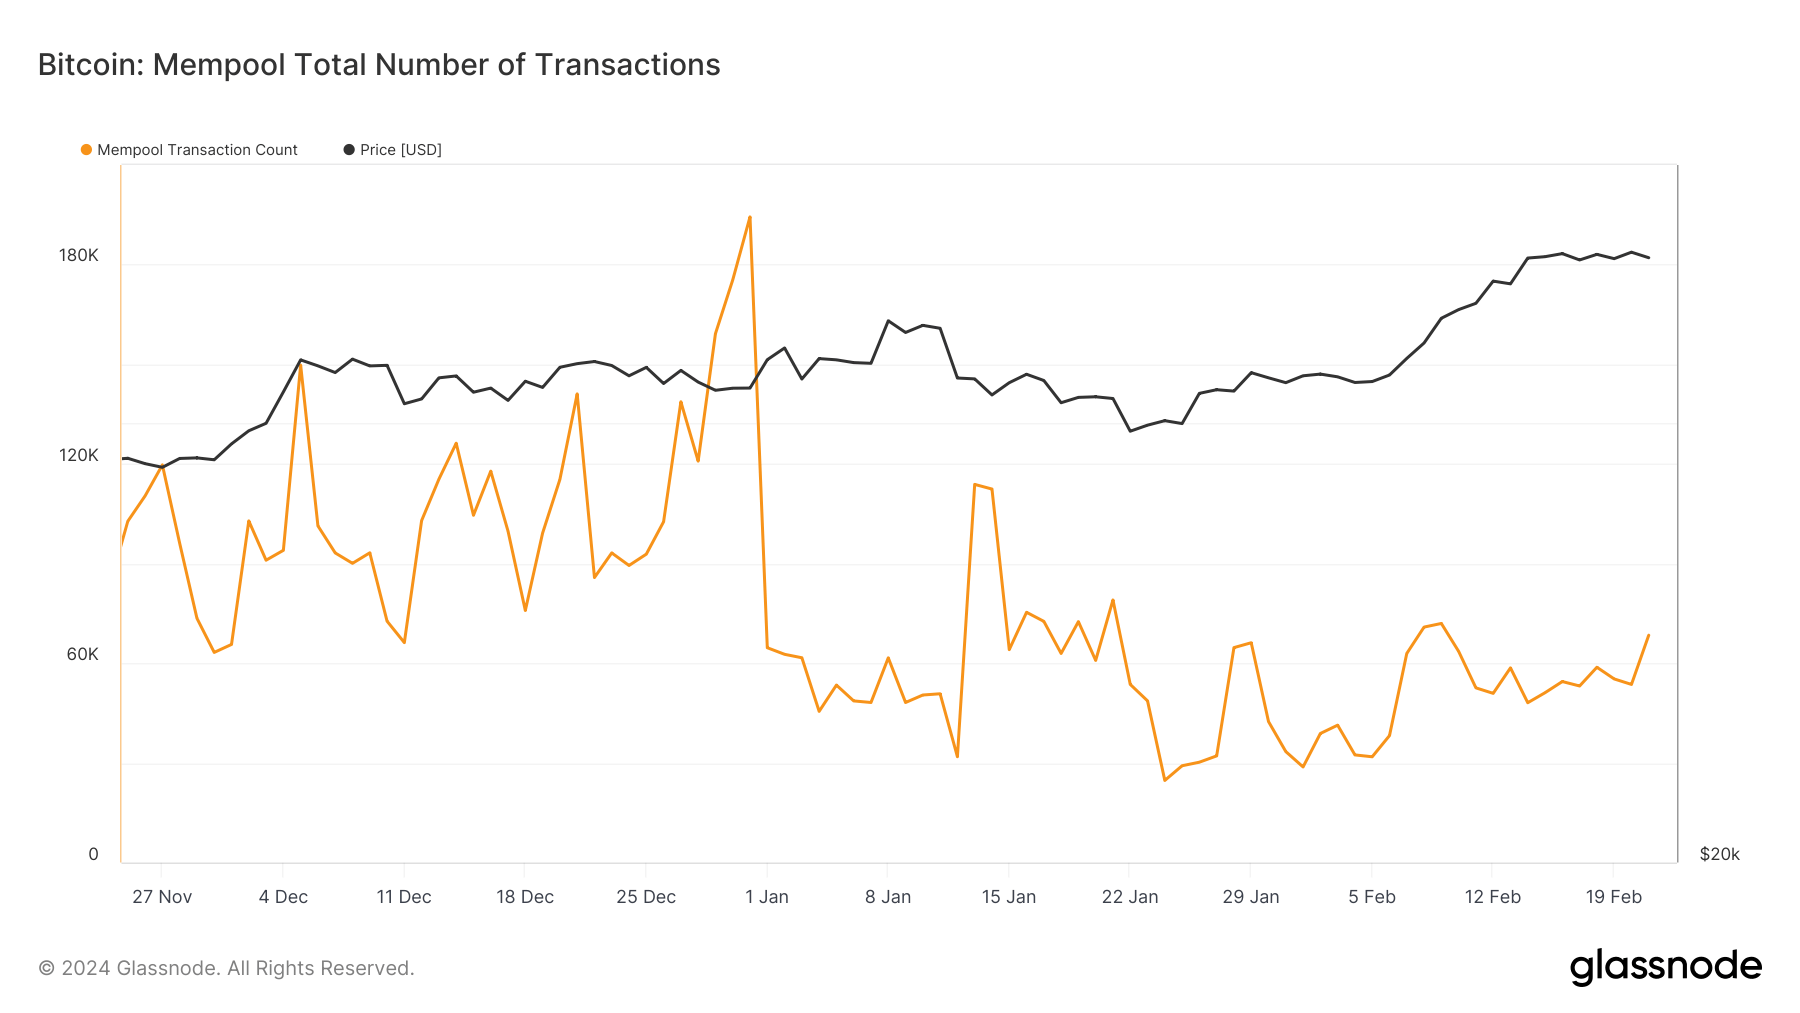 O congestionamento da rede Bitcoin diminui à medida que o mempool é eliminado em fevereiro